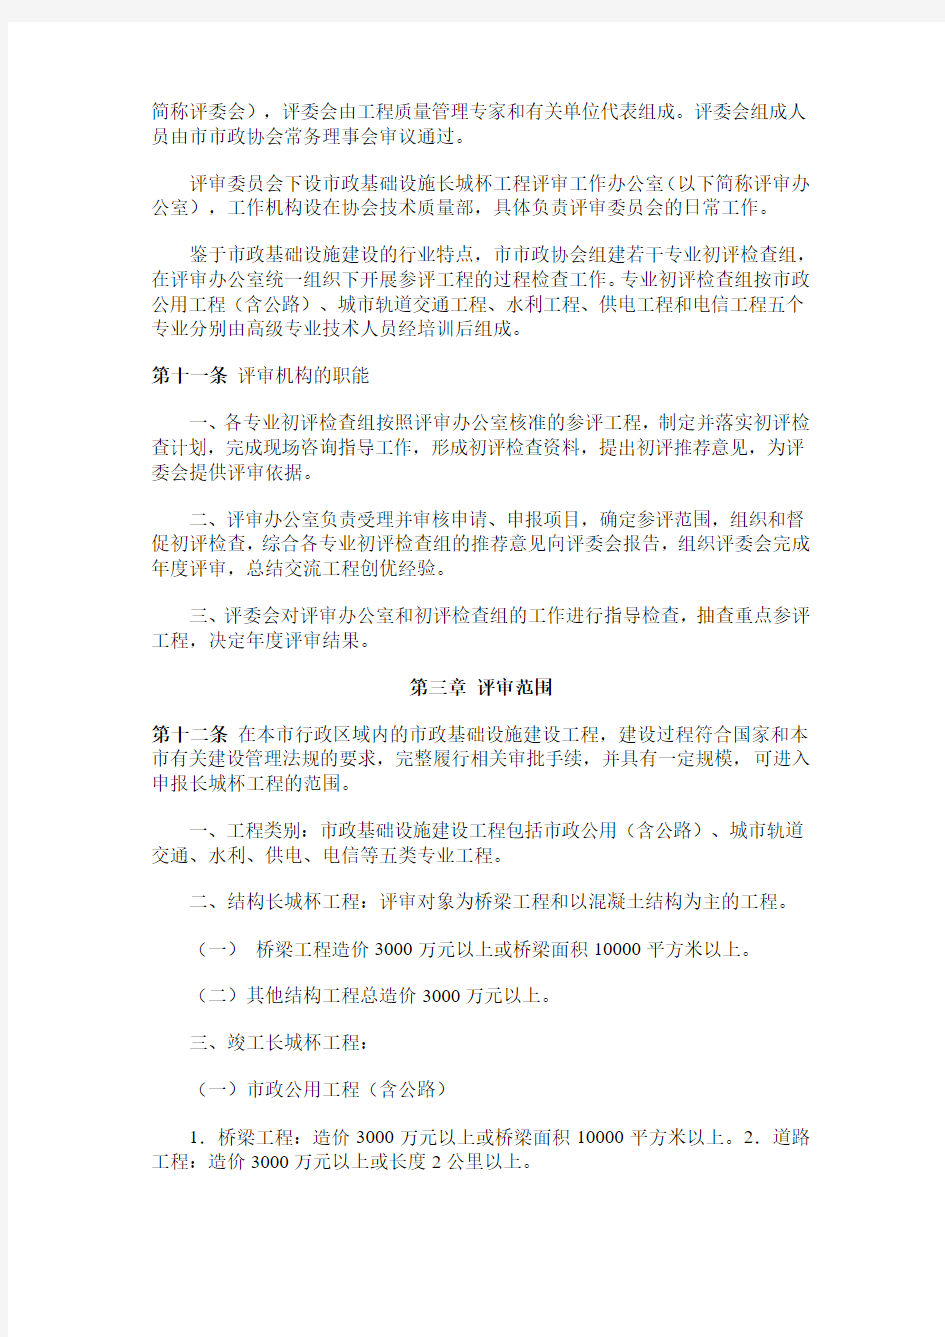 北京市市政基础设施长城杯工程评审管理办法